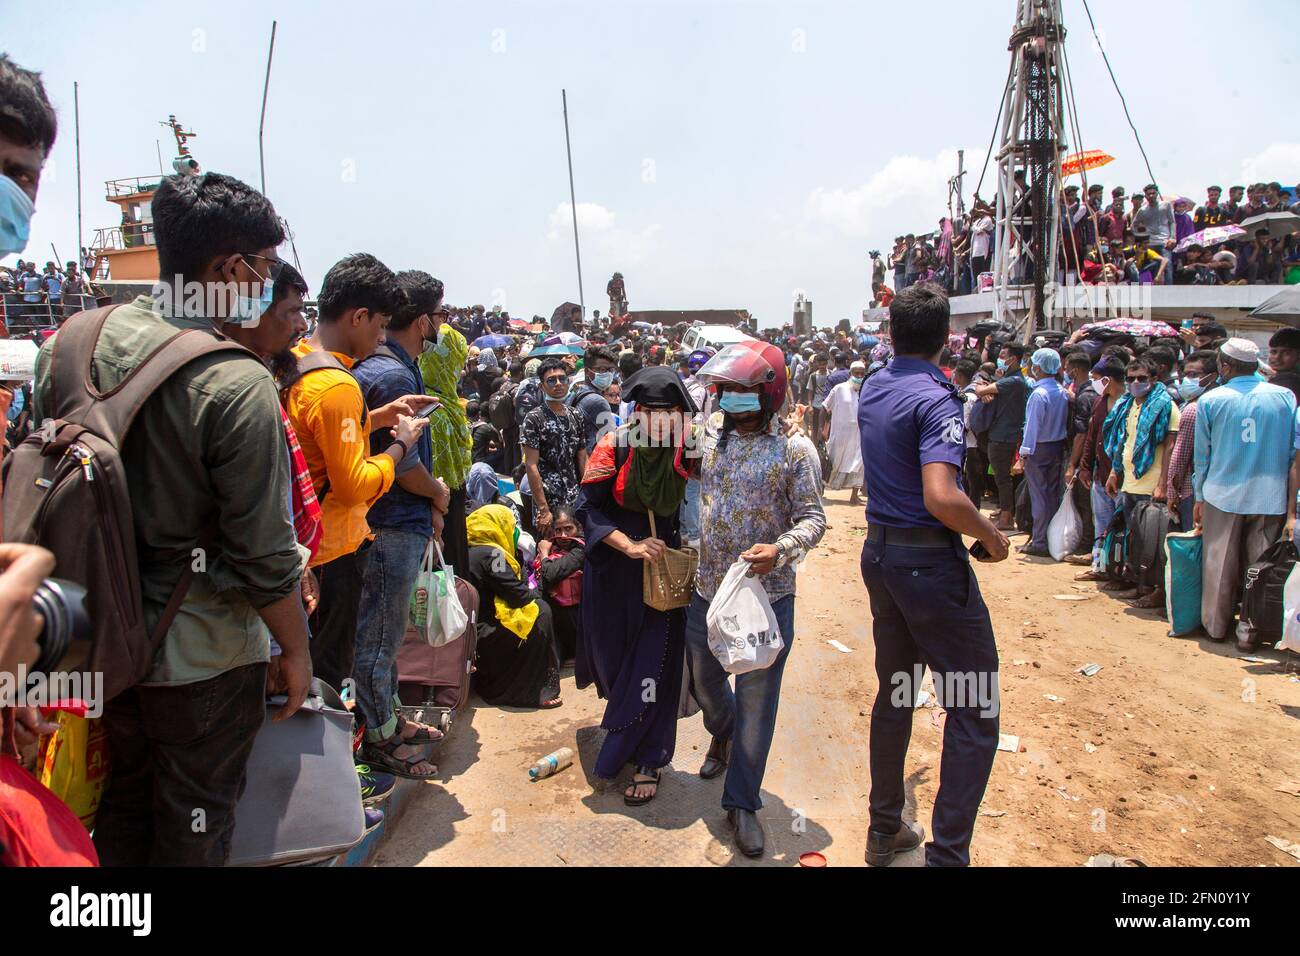 Des milliers de femmes et d'enfants attendent de monter à bord du ferry Shah Paran à Shimulia Ghat pour célébrer l'Eid malgré l'épidémie. Dans le soleil brûlant Banque D'Images